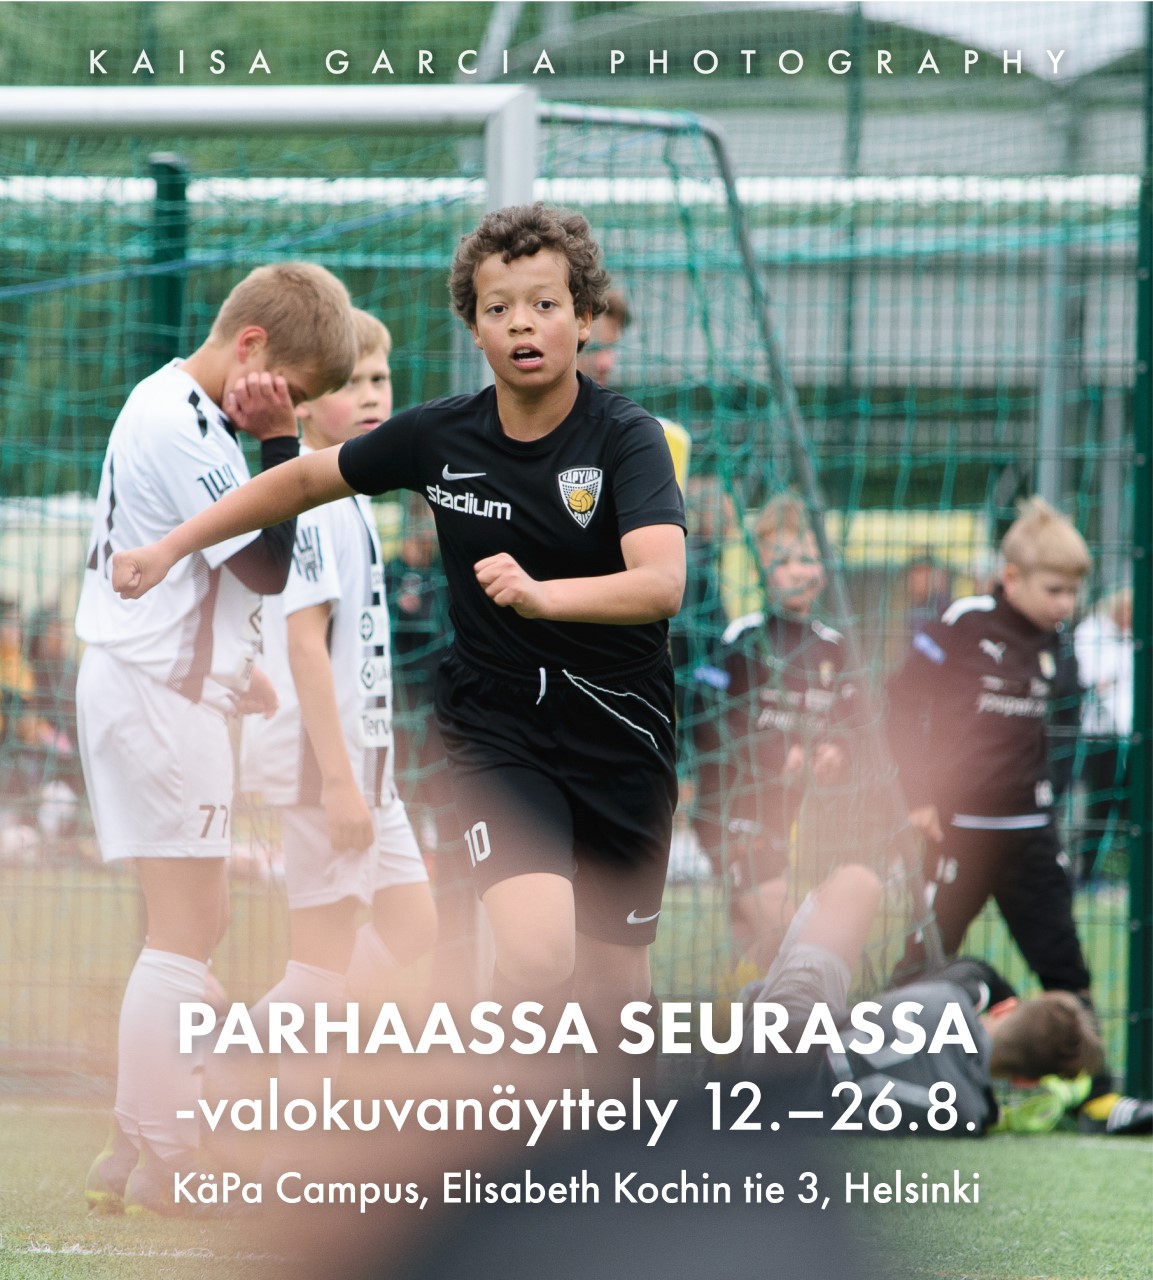 PARHAASSA SEURASSA -valokuvanäyttely kertoo jalkapalloseura Käpylän Pallon toiminnasta.